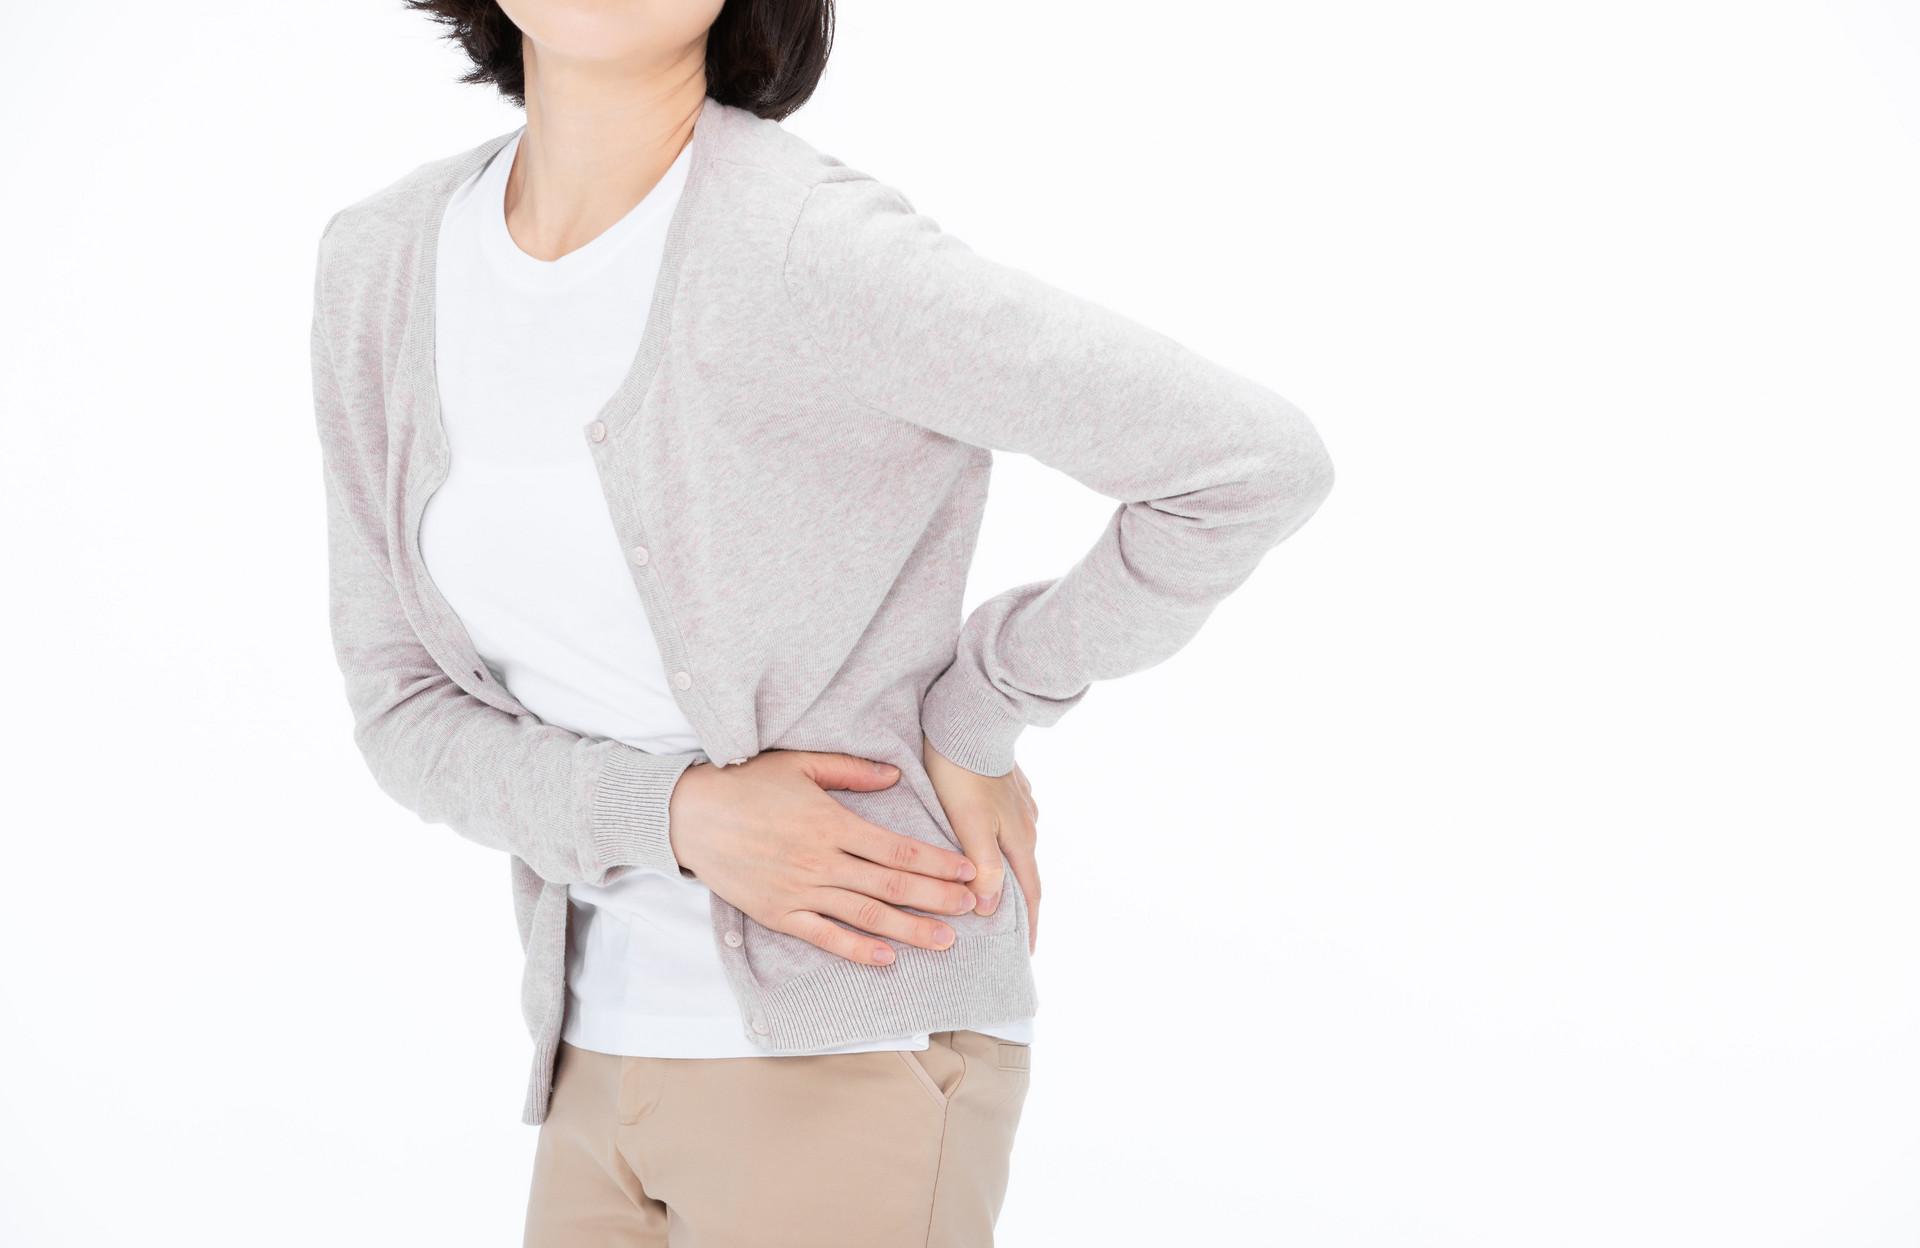 产后尾巴椎骨疼痛是什么原因 多跟这4个因素有关